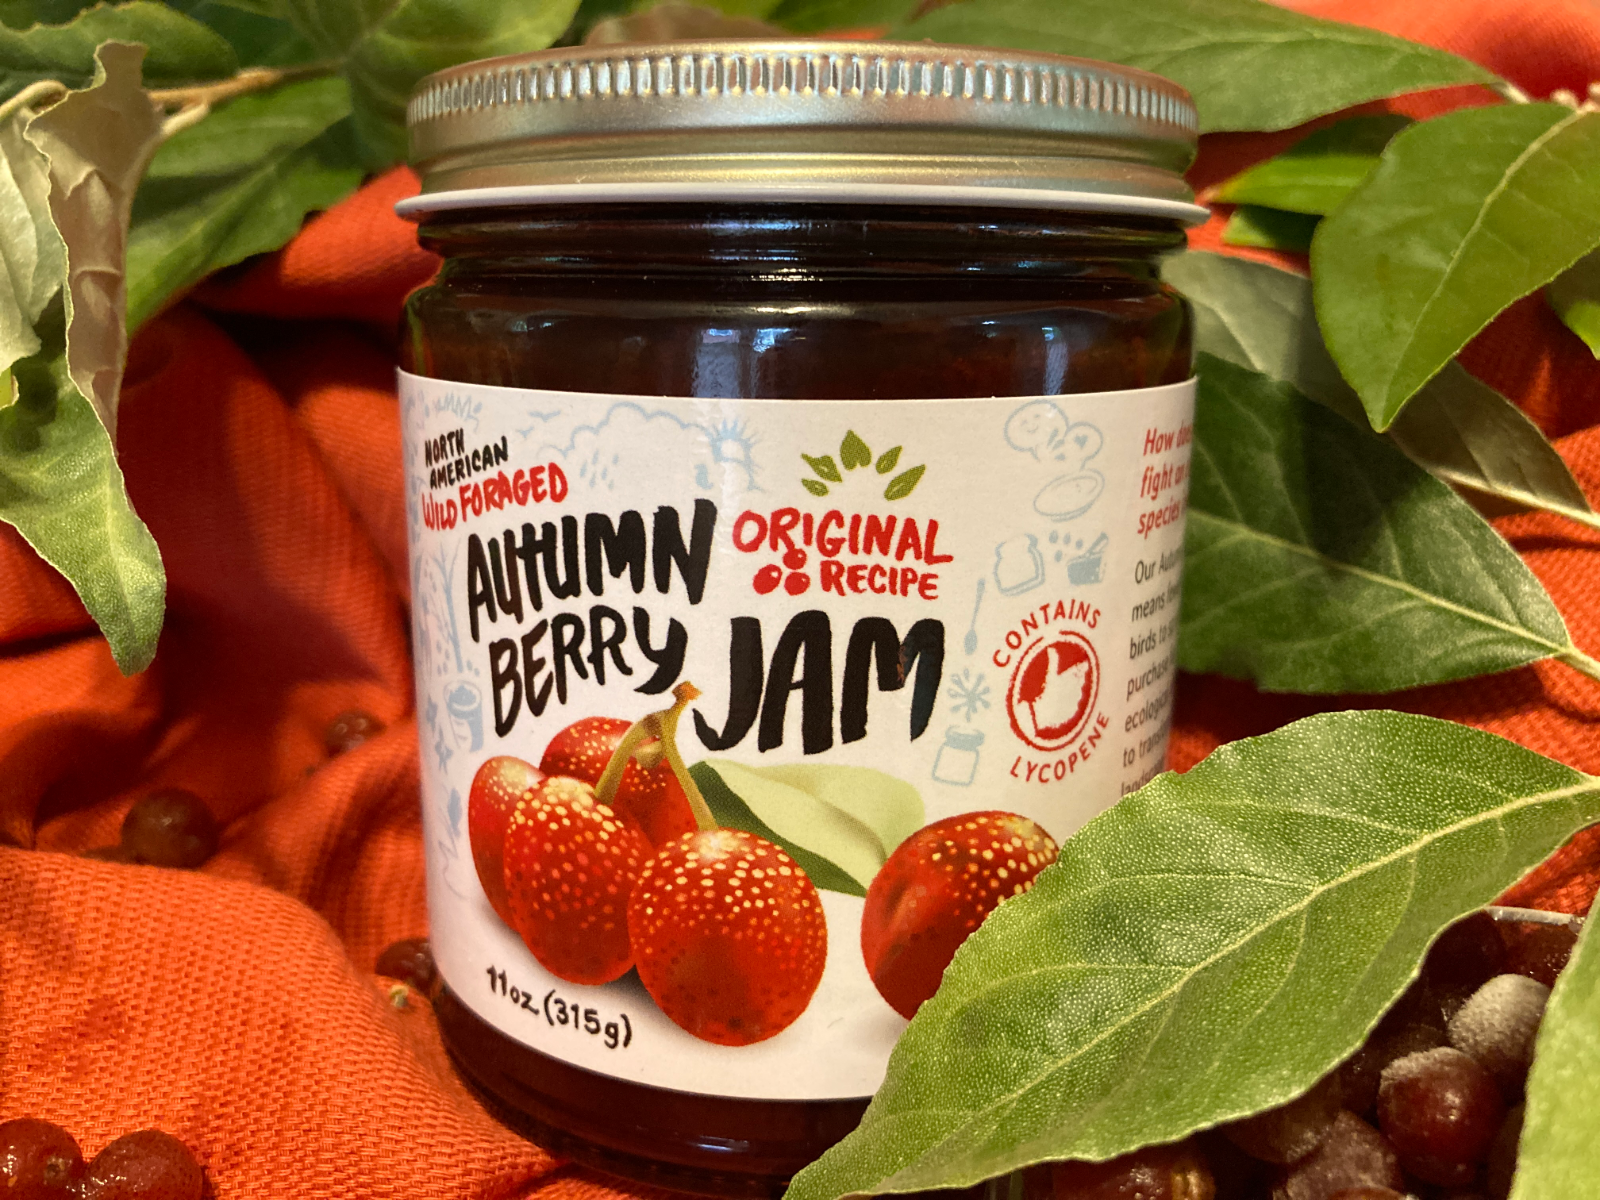 autumn-berry-jam-original-flavor